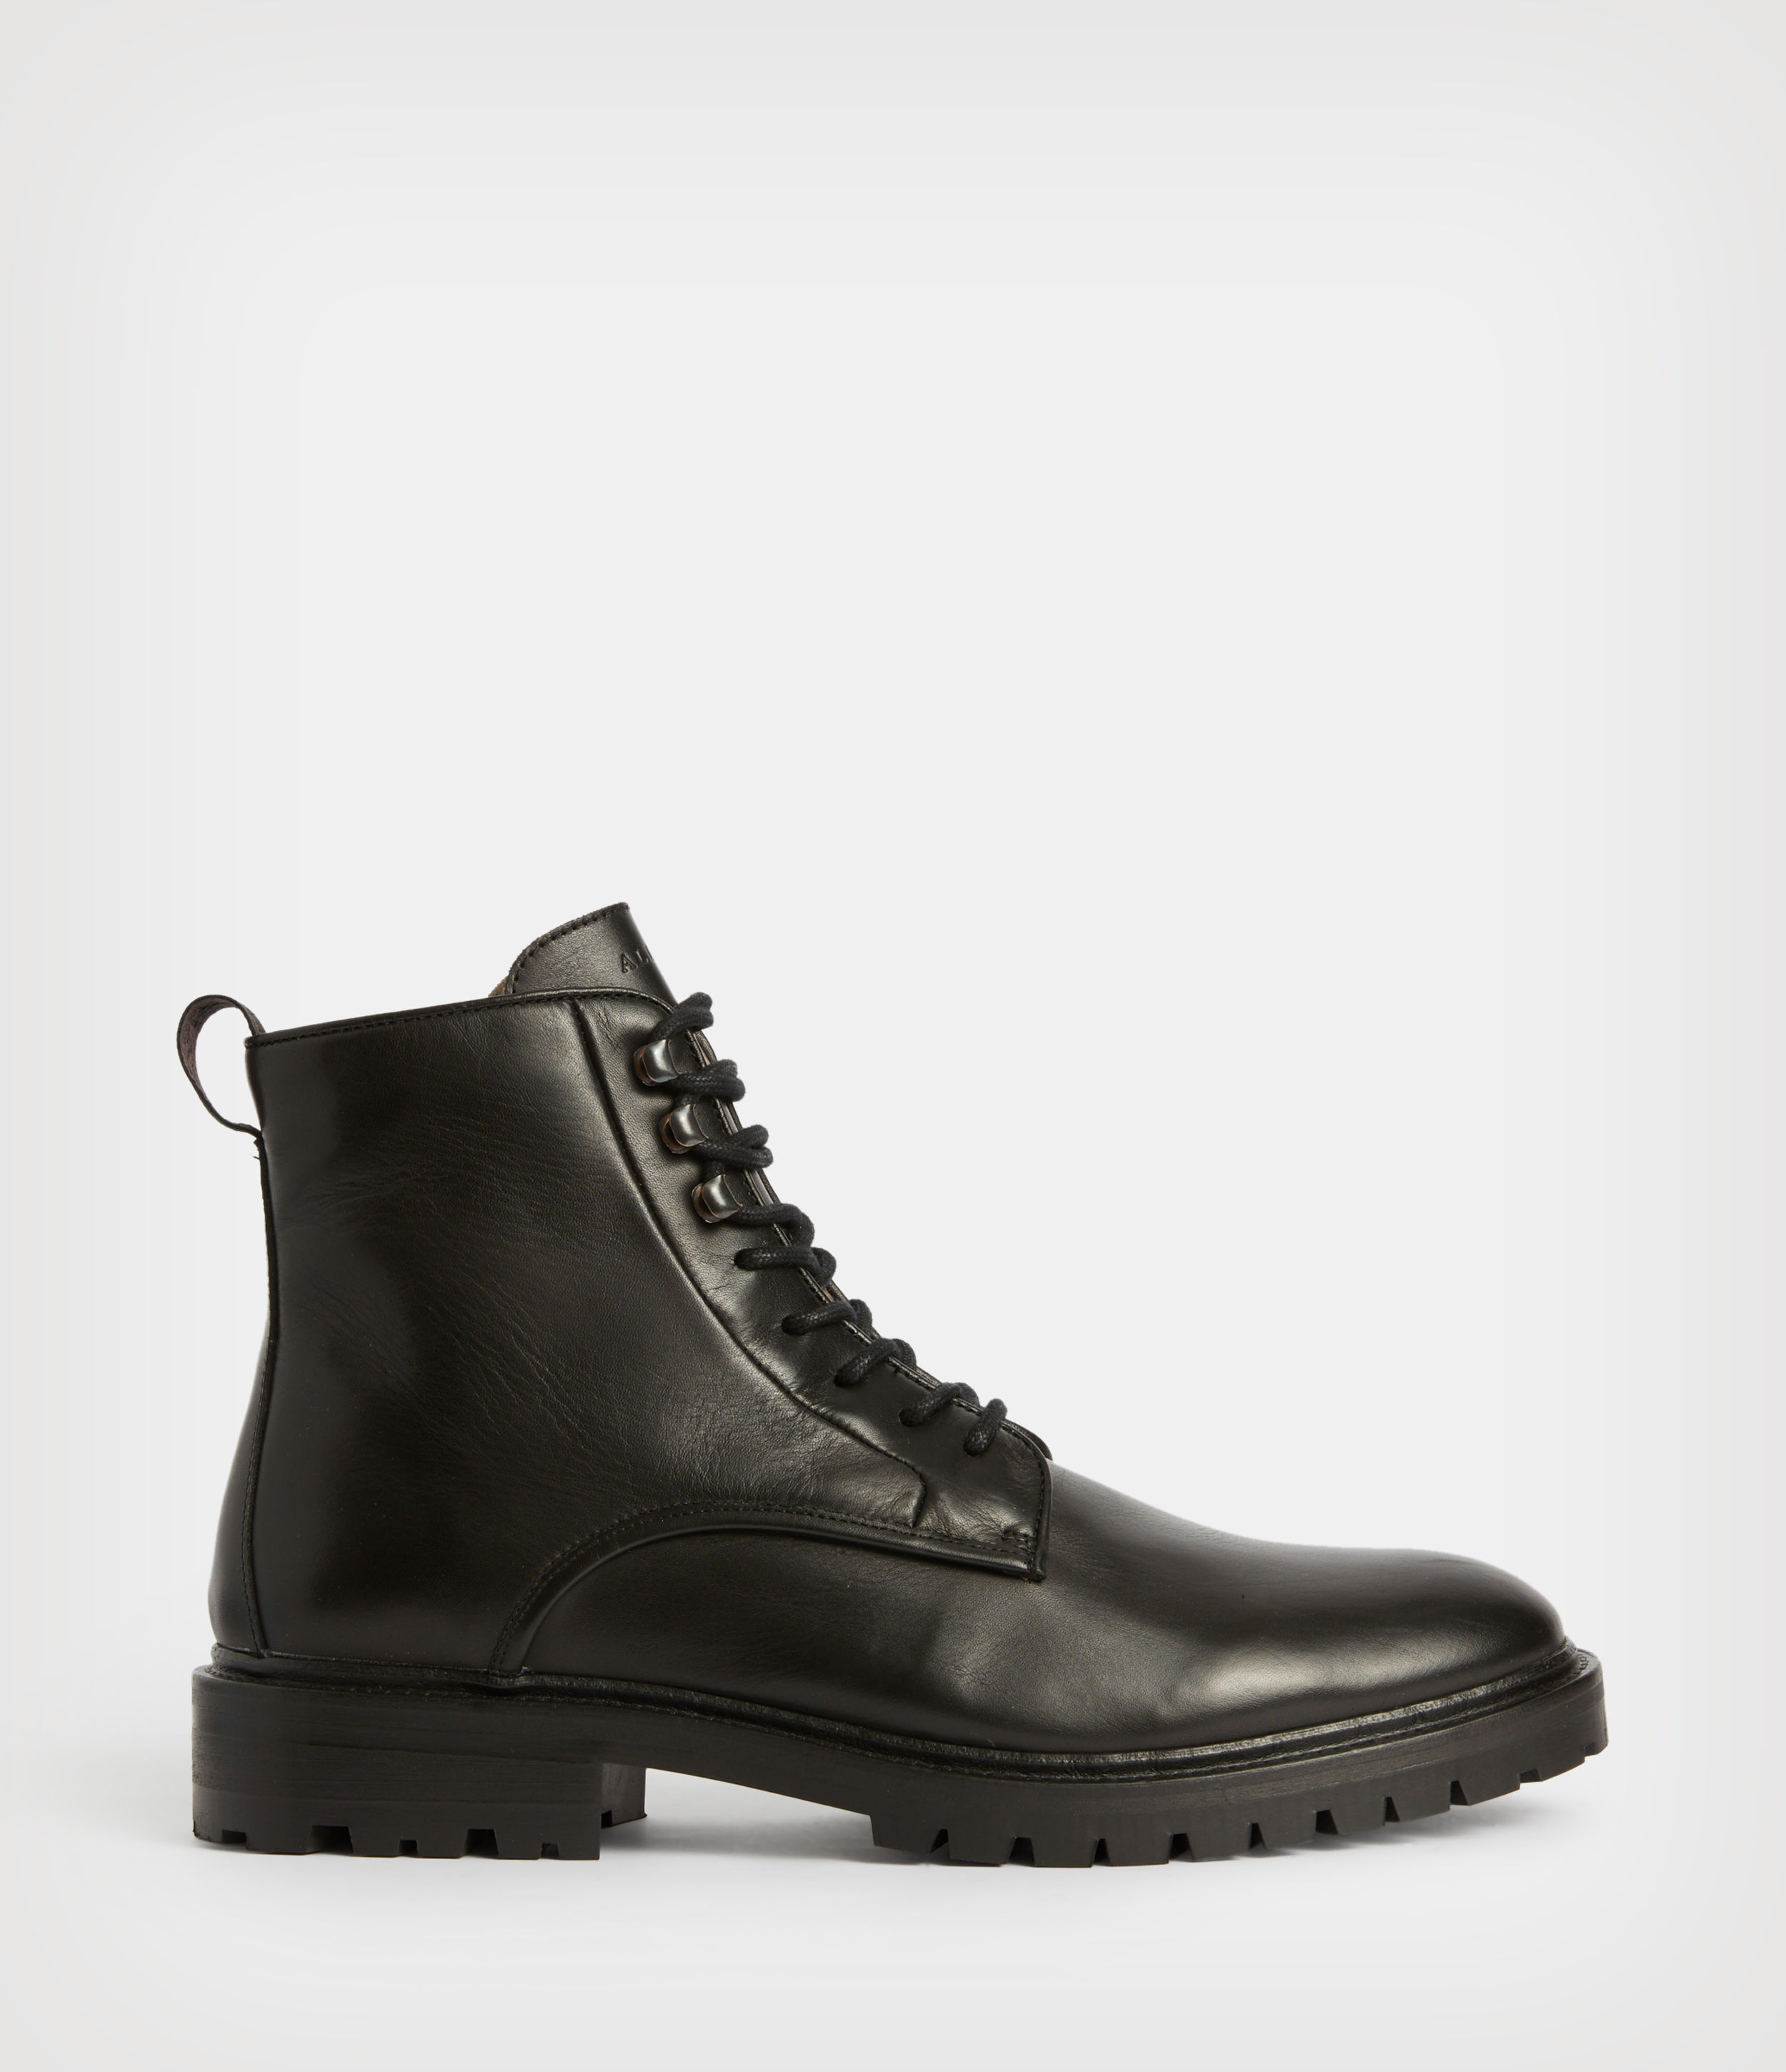 AllSaints Men's Laker Leather Boots, Black, Size: UK 8/US 9/EU 42